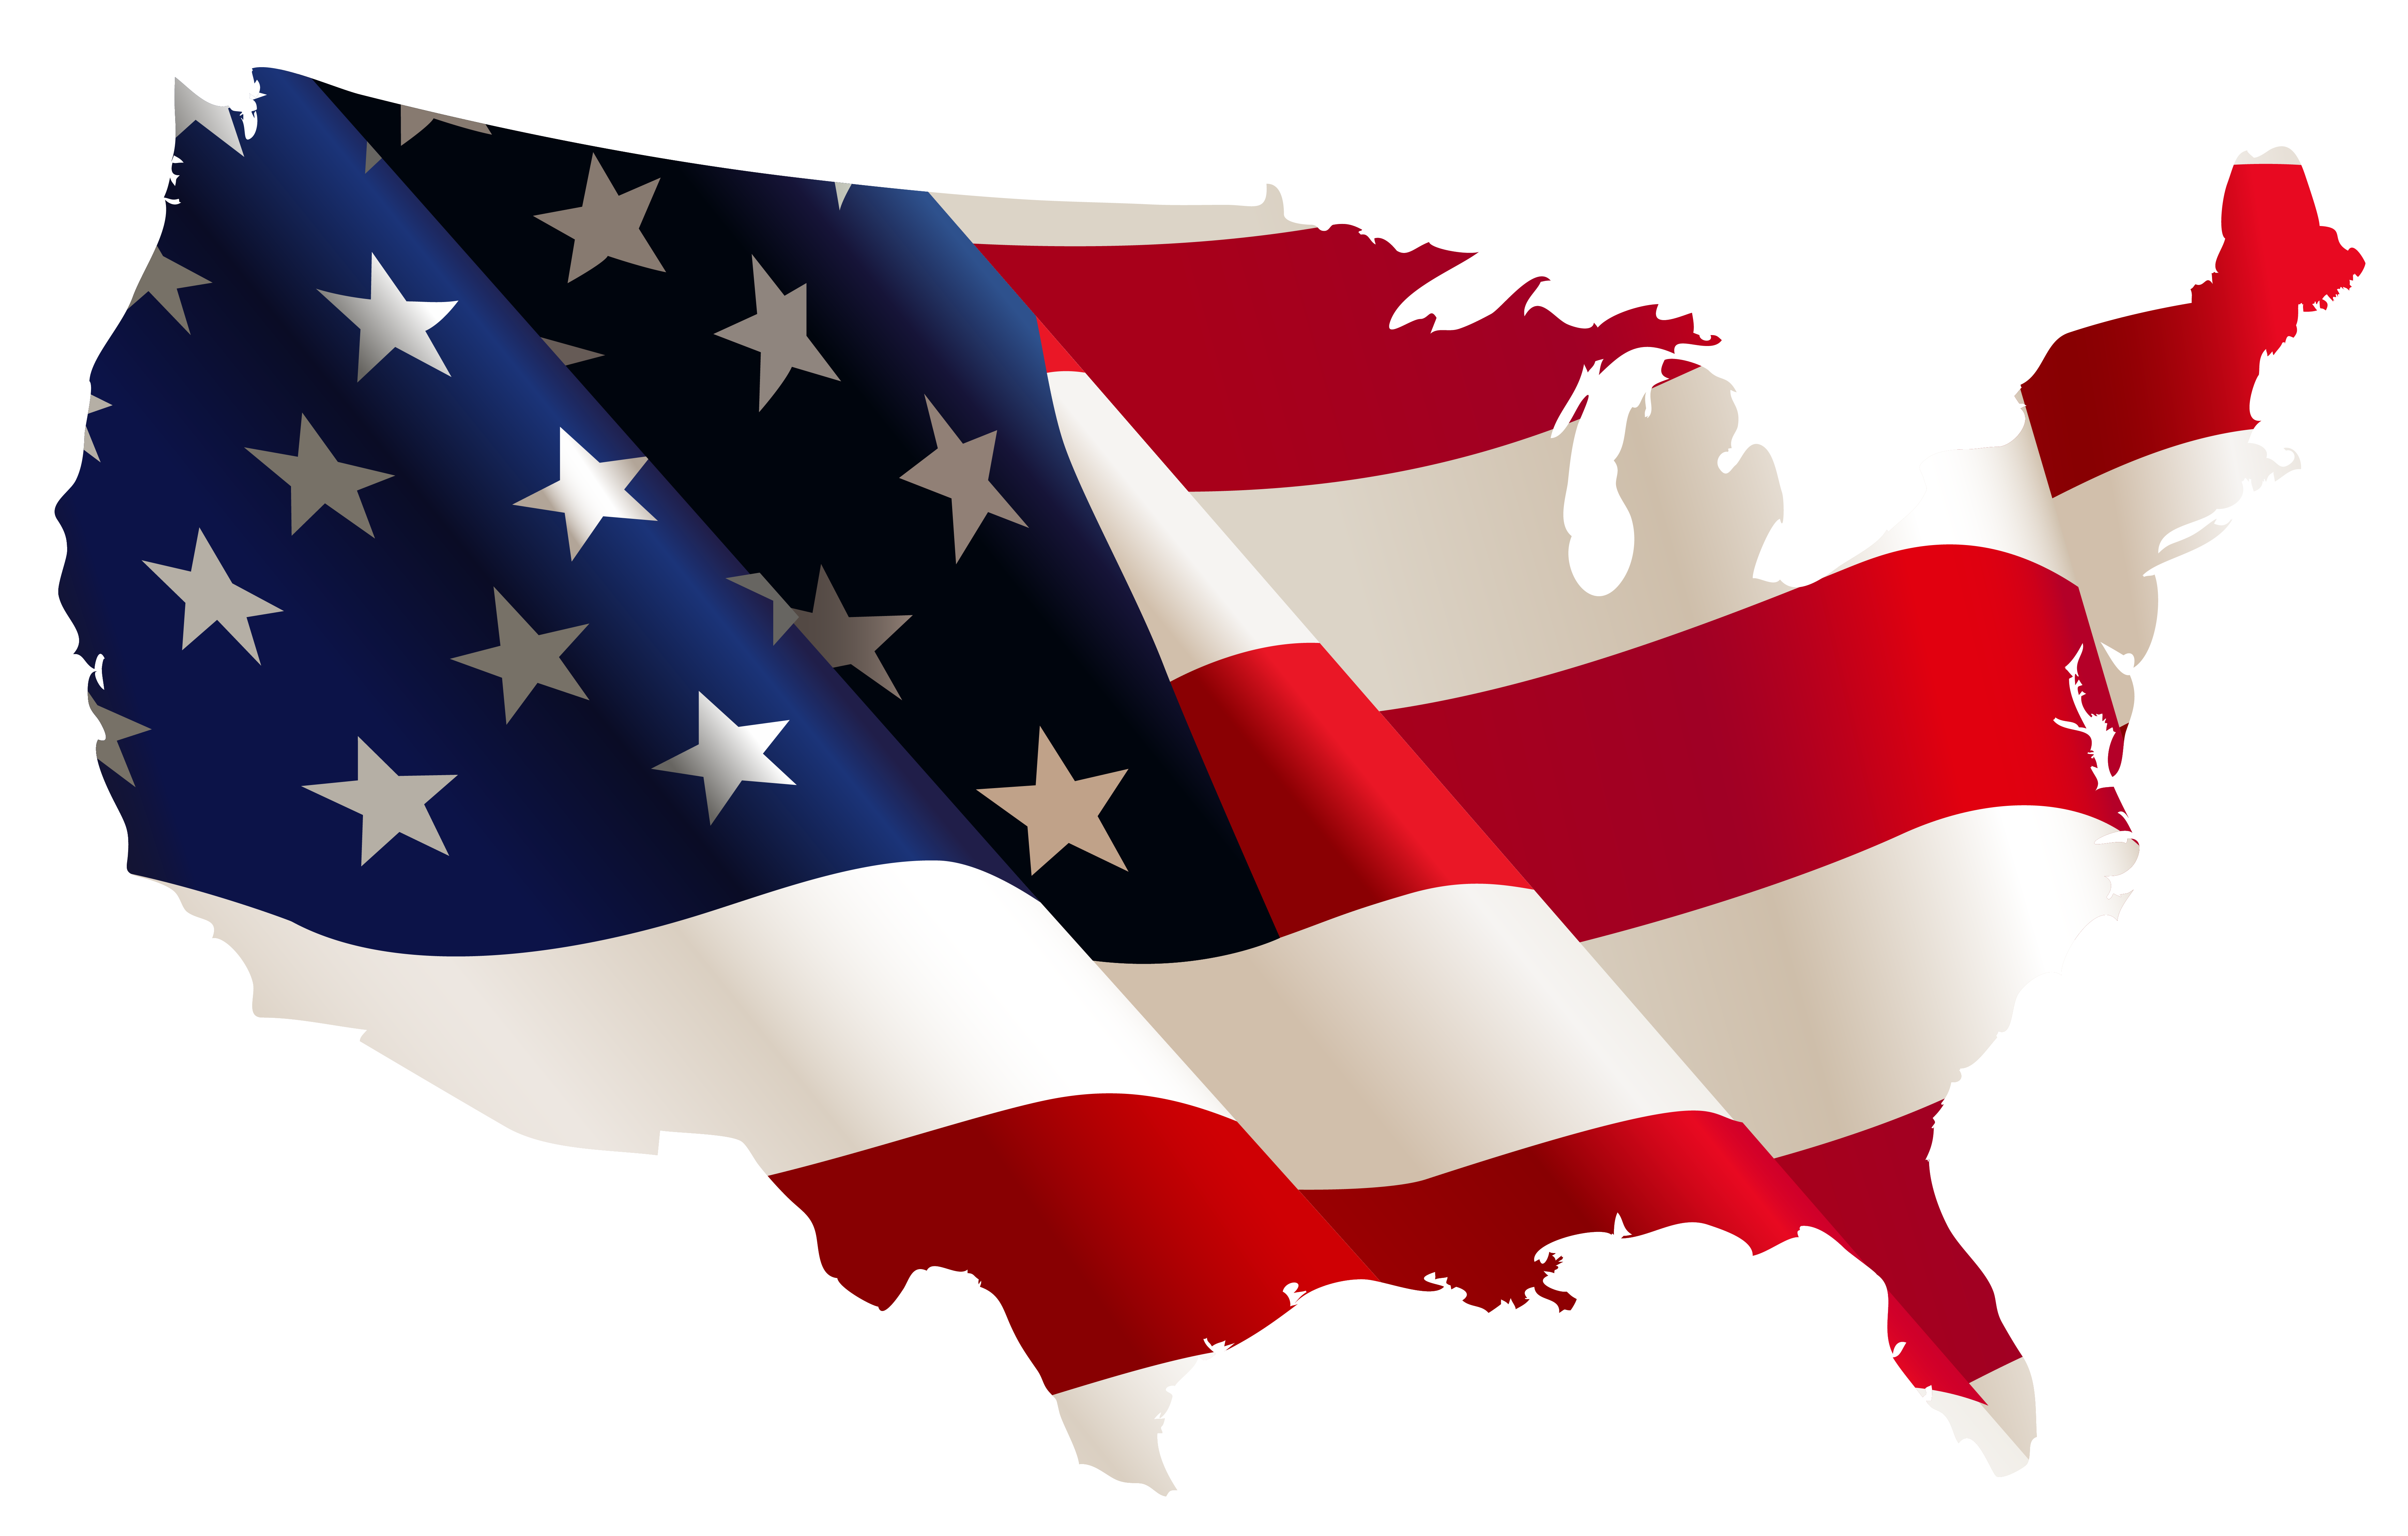 American flag clip art free 2 - Clipartix